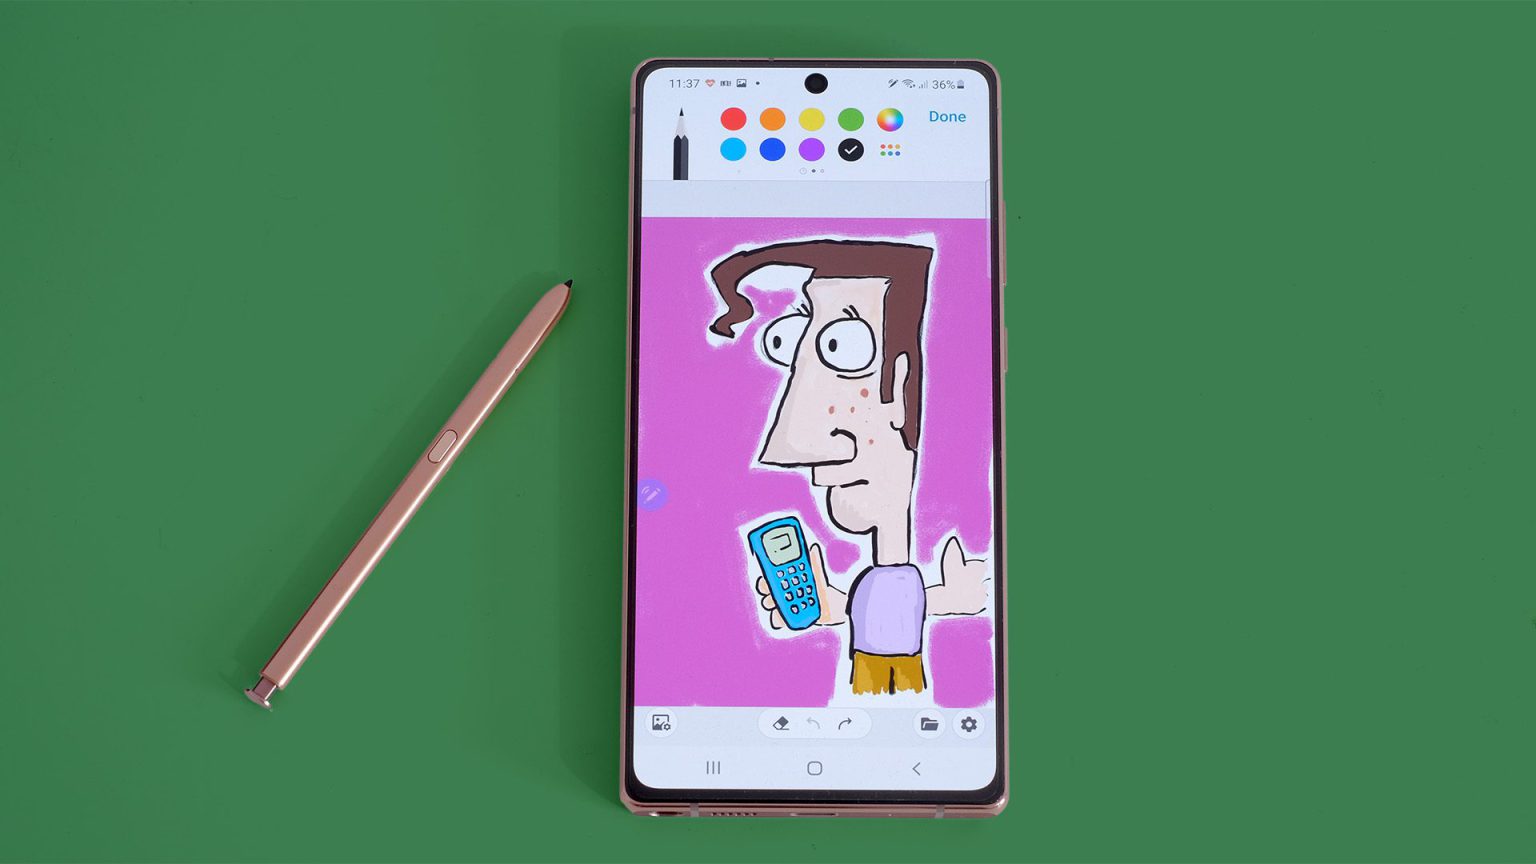 Penup, la app para dibujar de Samsung, añade novedades interesantes como las capas para poder hacer creaciones más complejas.